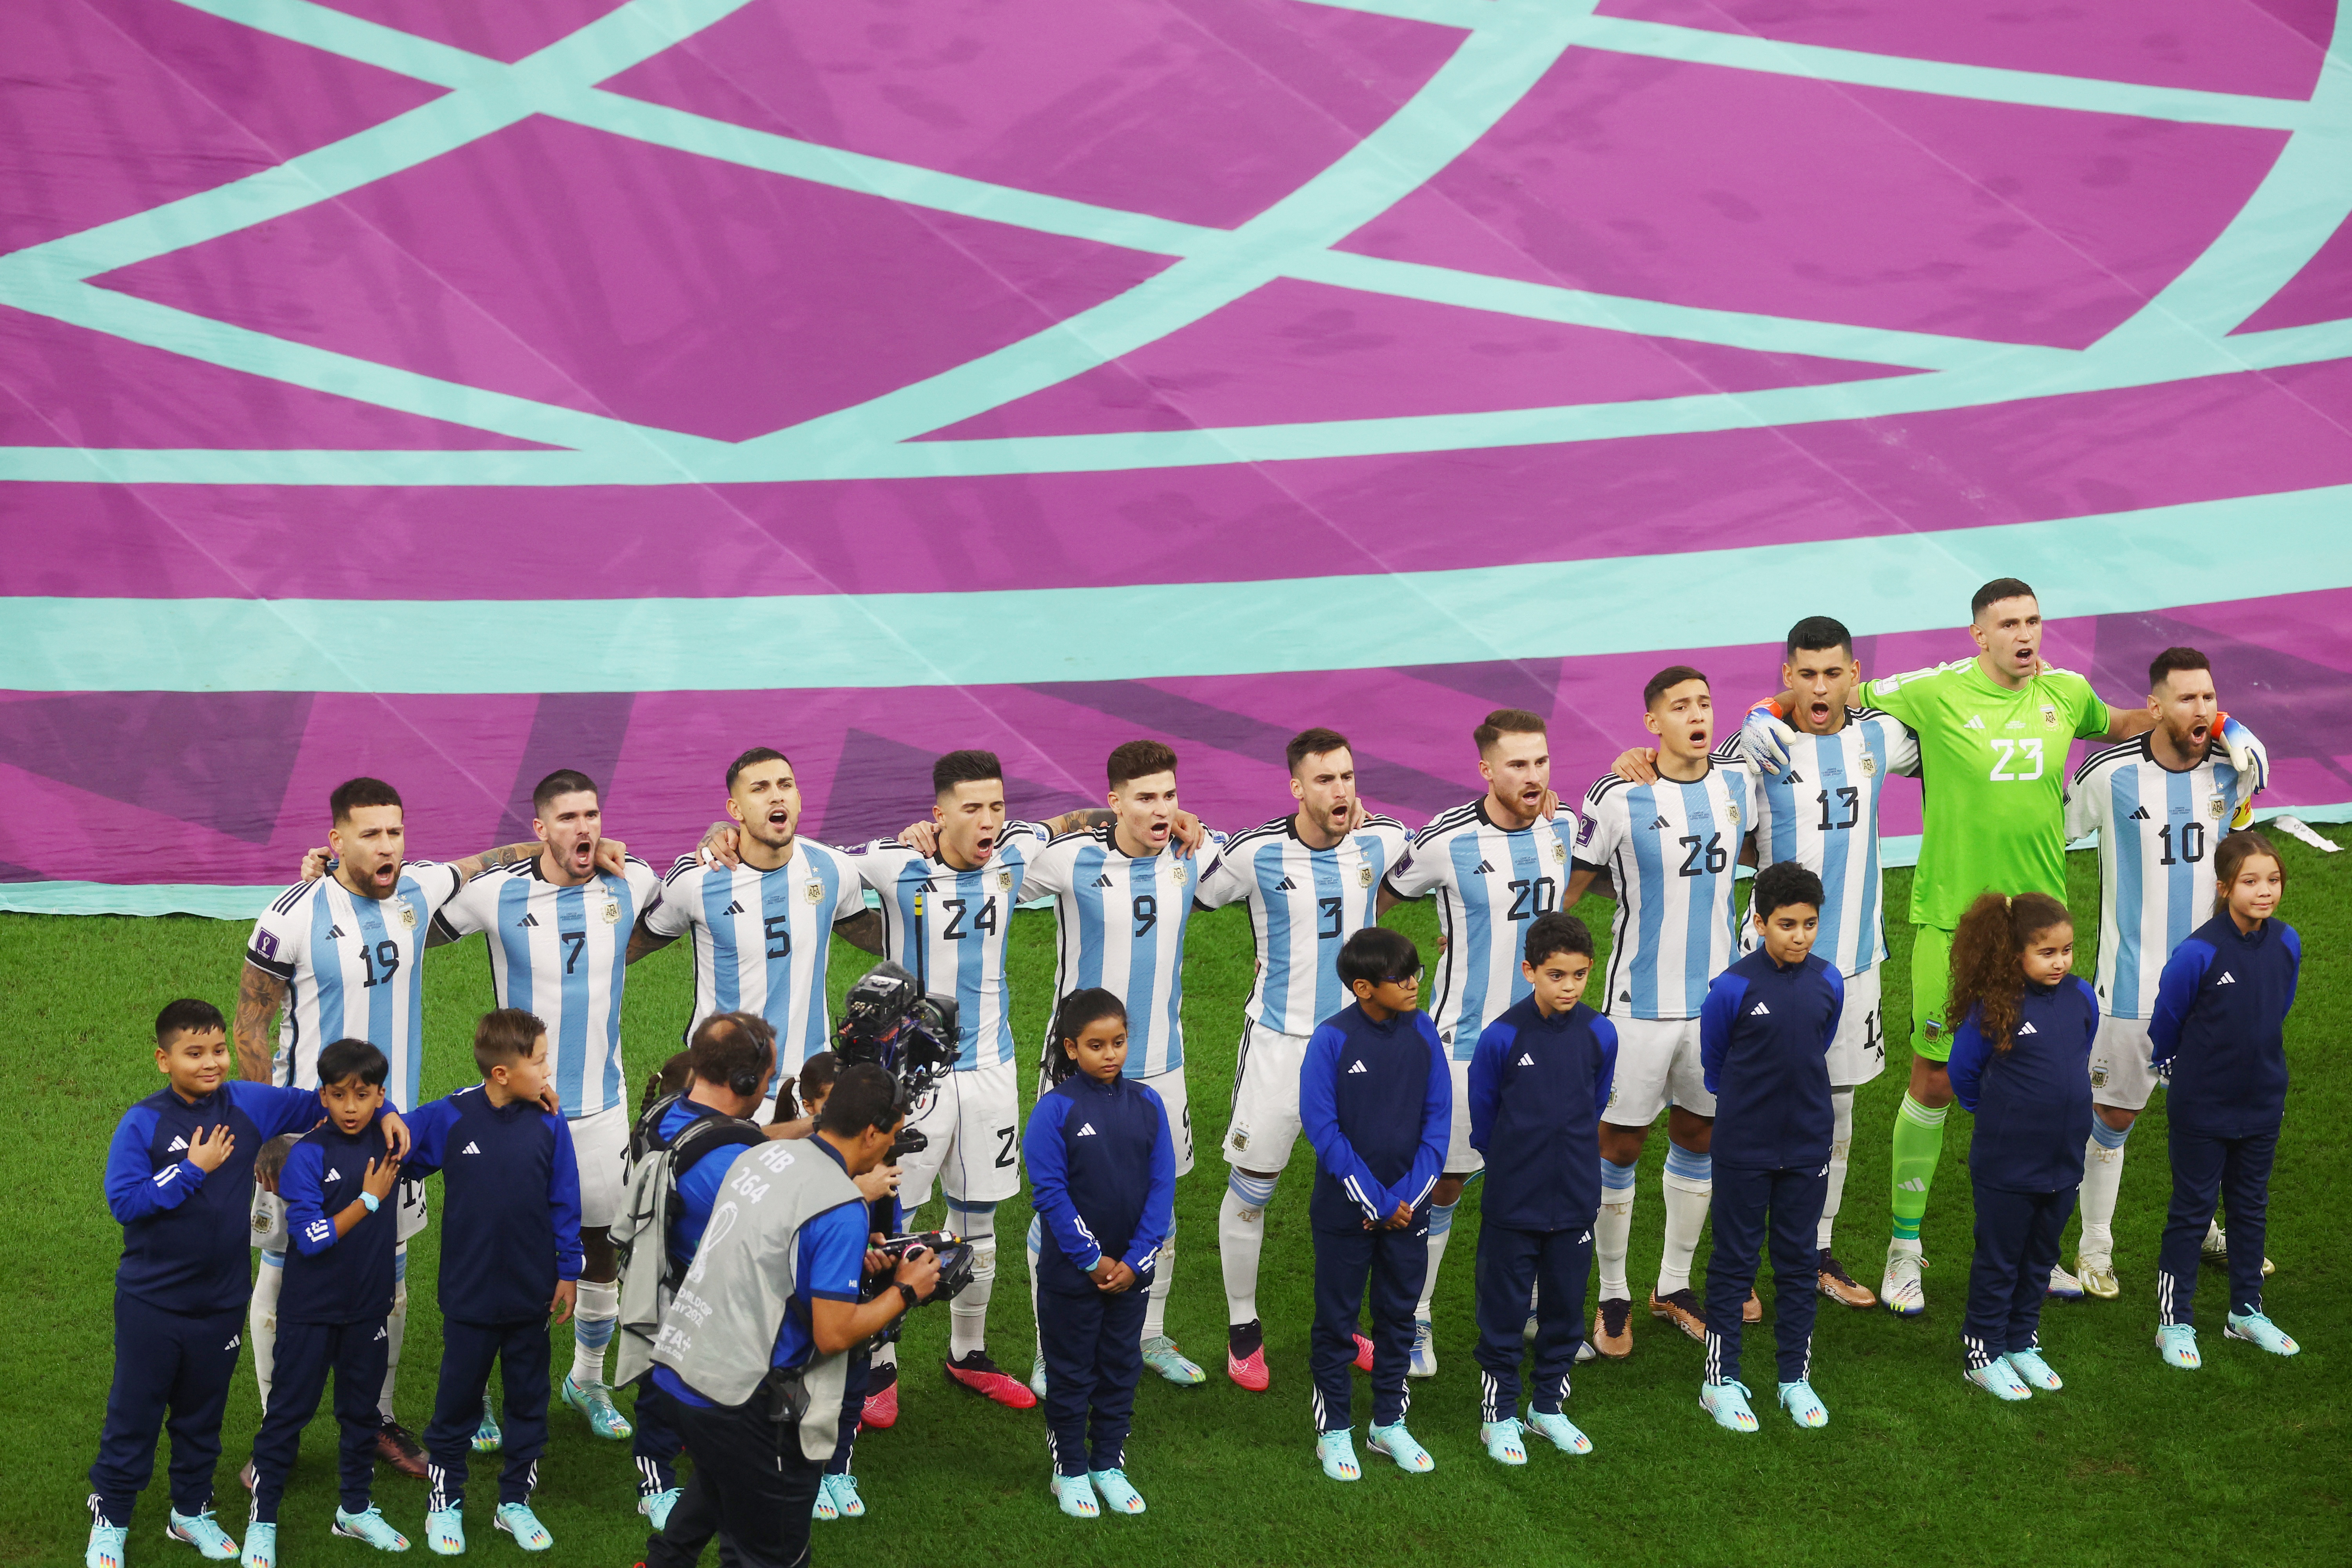 La selecciÃ³n argentina durante el himno ante Croacia (REUTERS/Paul Childs)